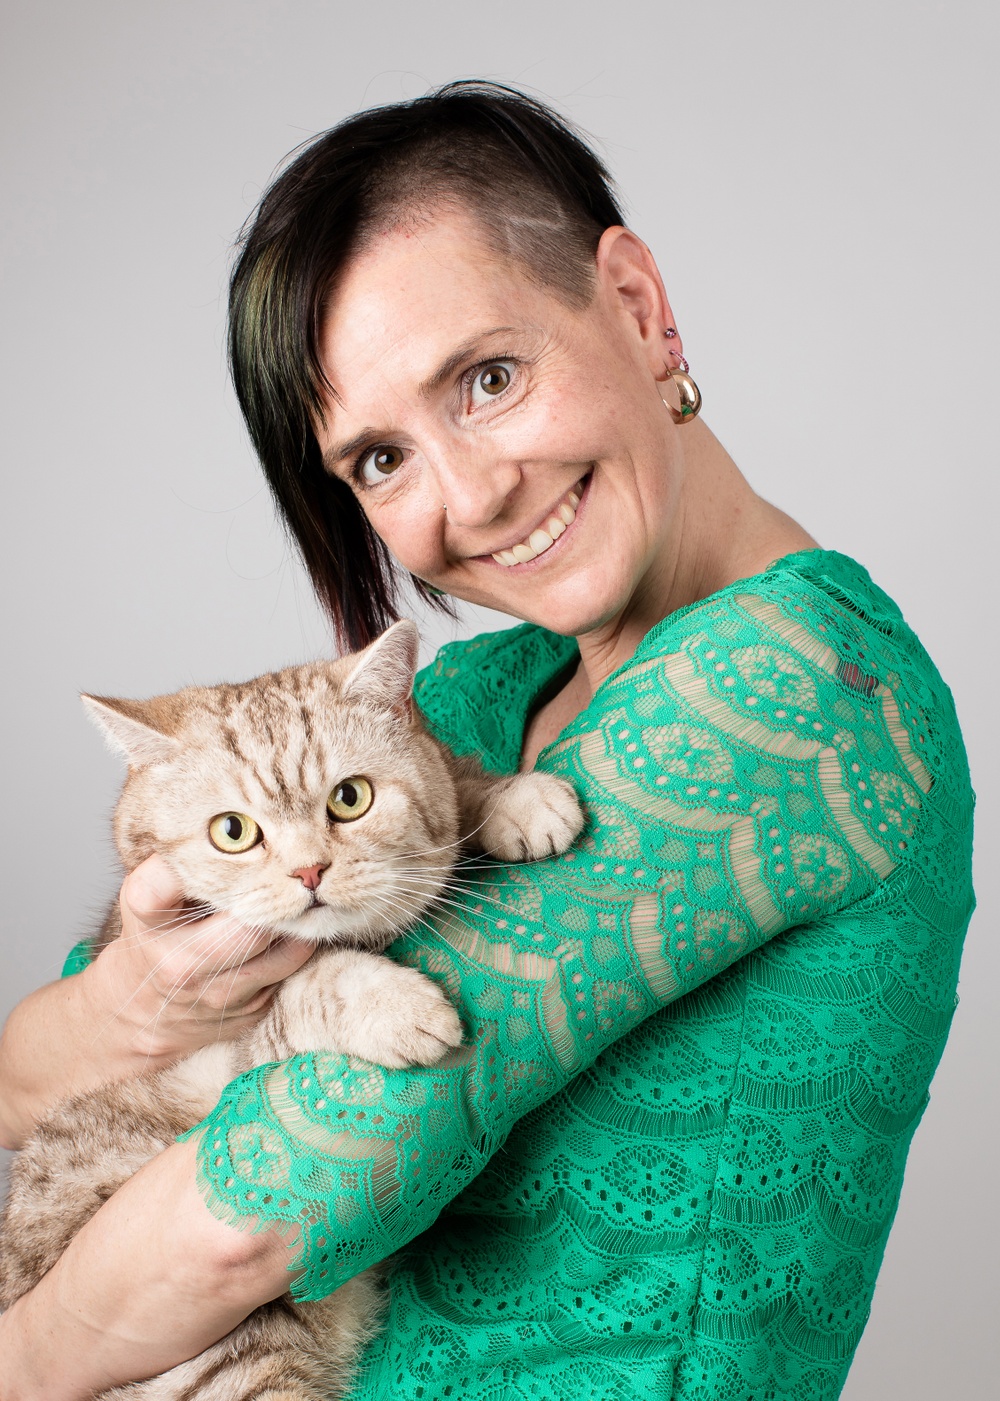 Djurskyddet Sveriges generalsekreterare Åsa Hagelstedt tillsammans med hennes katt Findus.